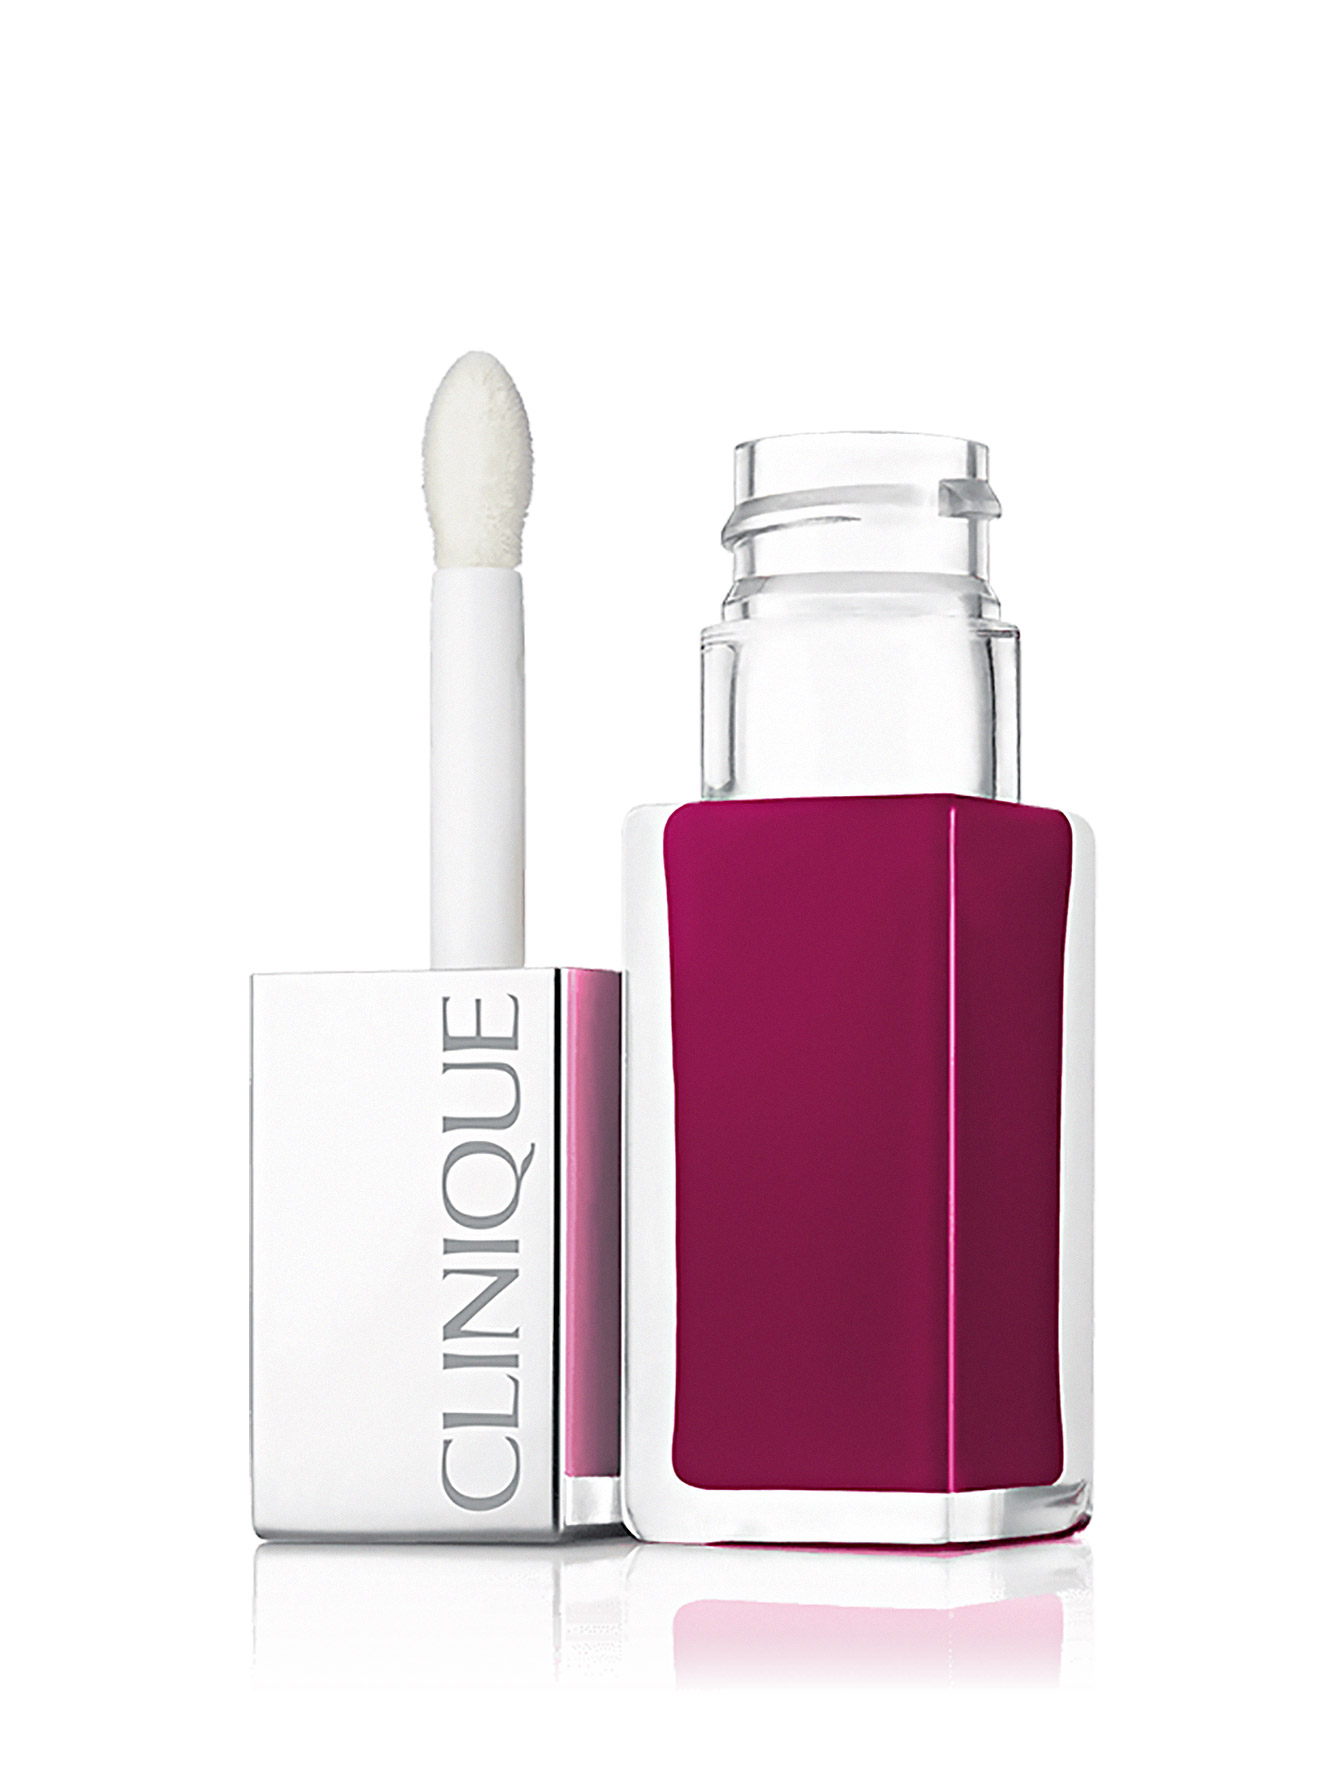  Лак для губ: интенсивный цвет и уход - №08 Peace Pop, Clinique Pop, 6ml - Общий вид